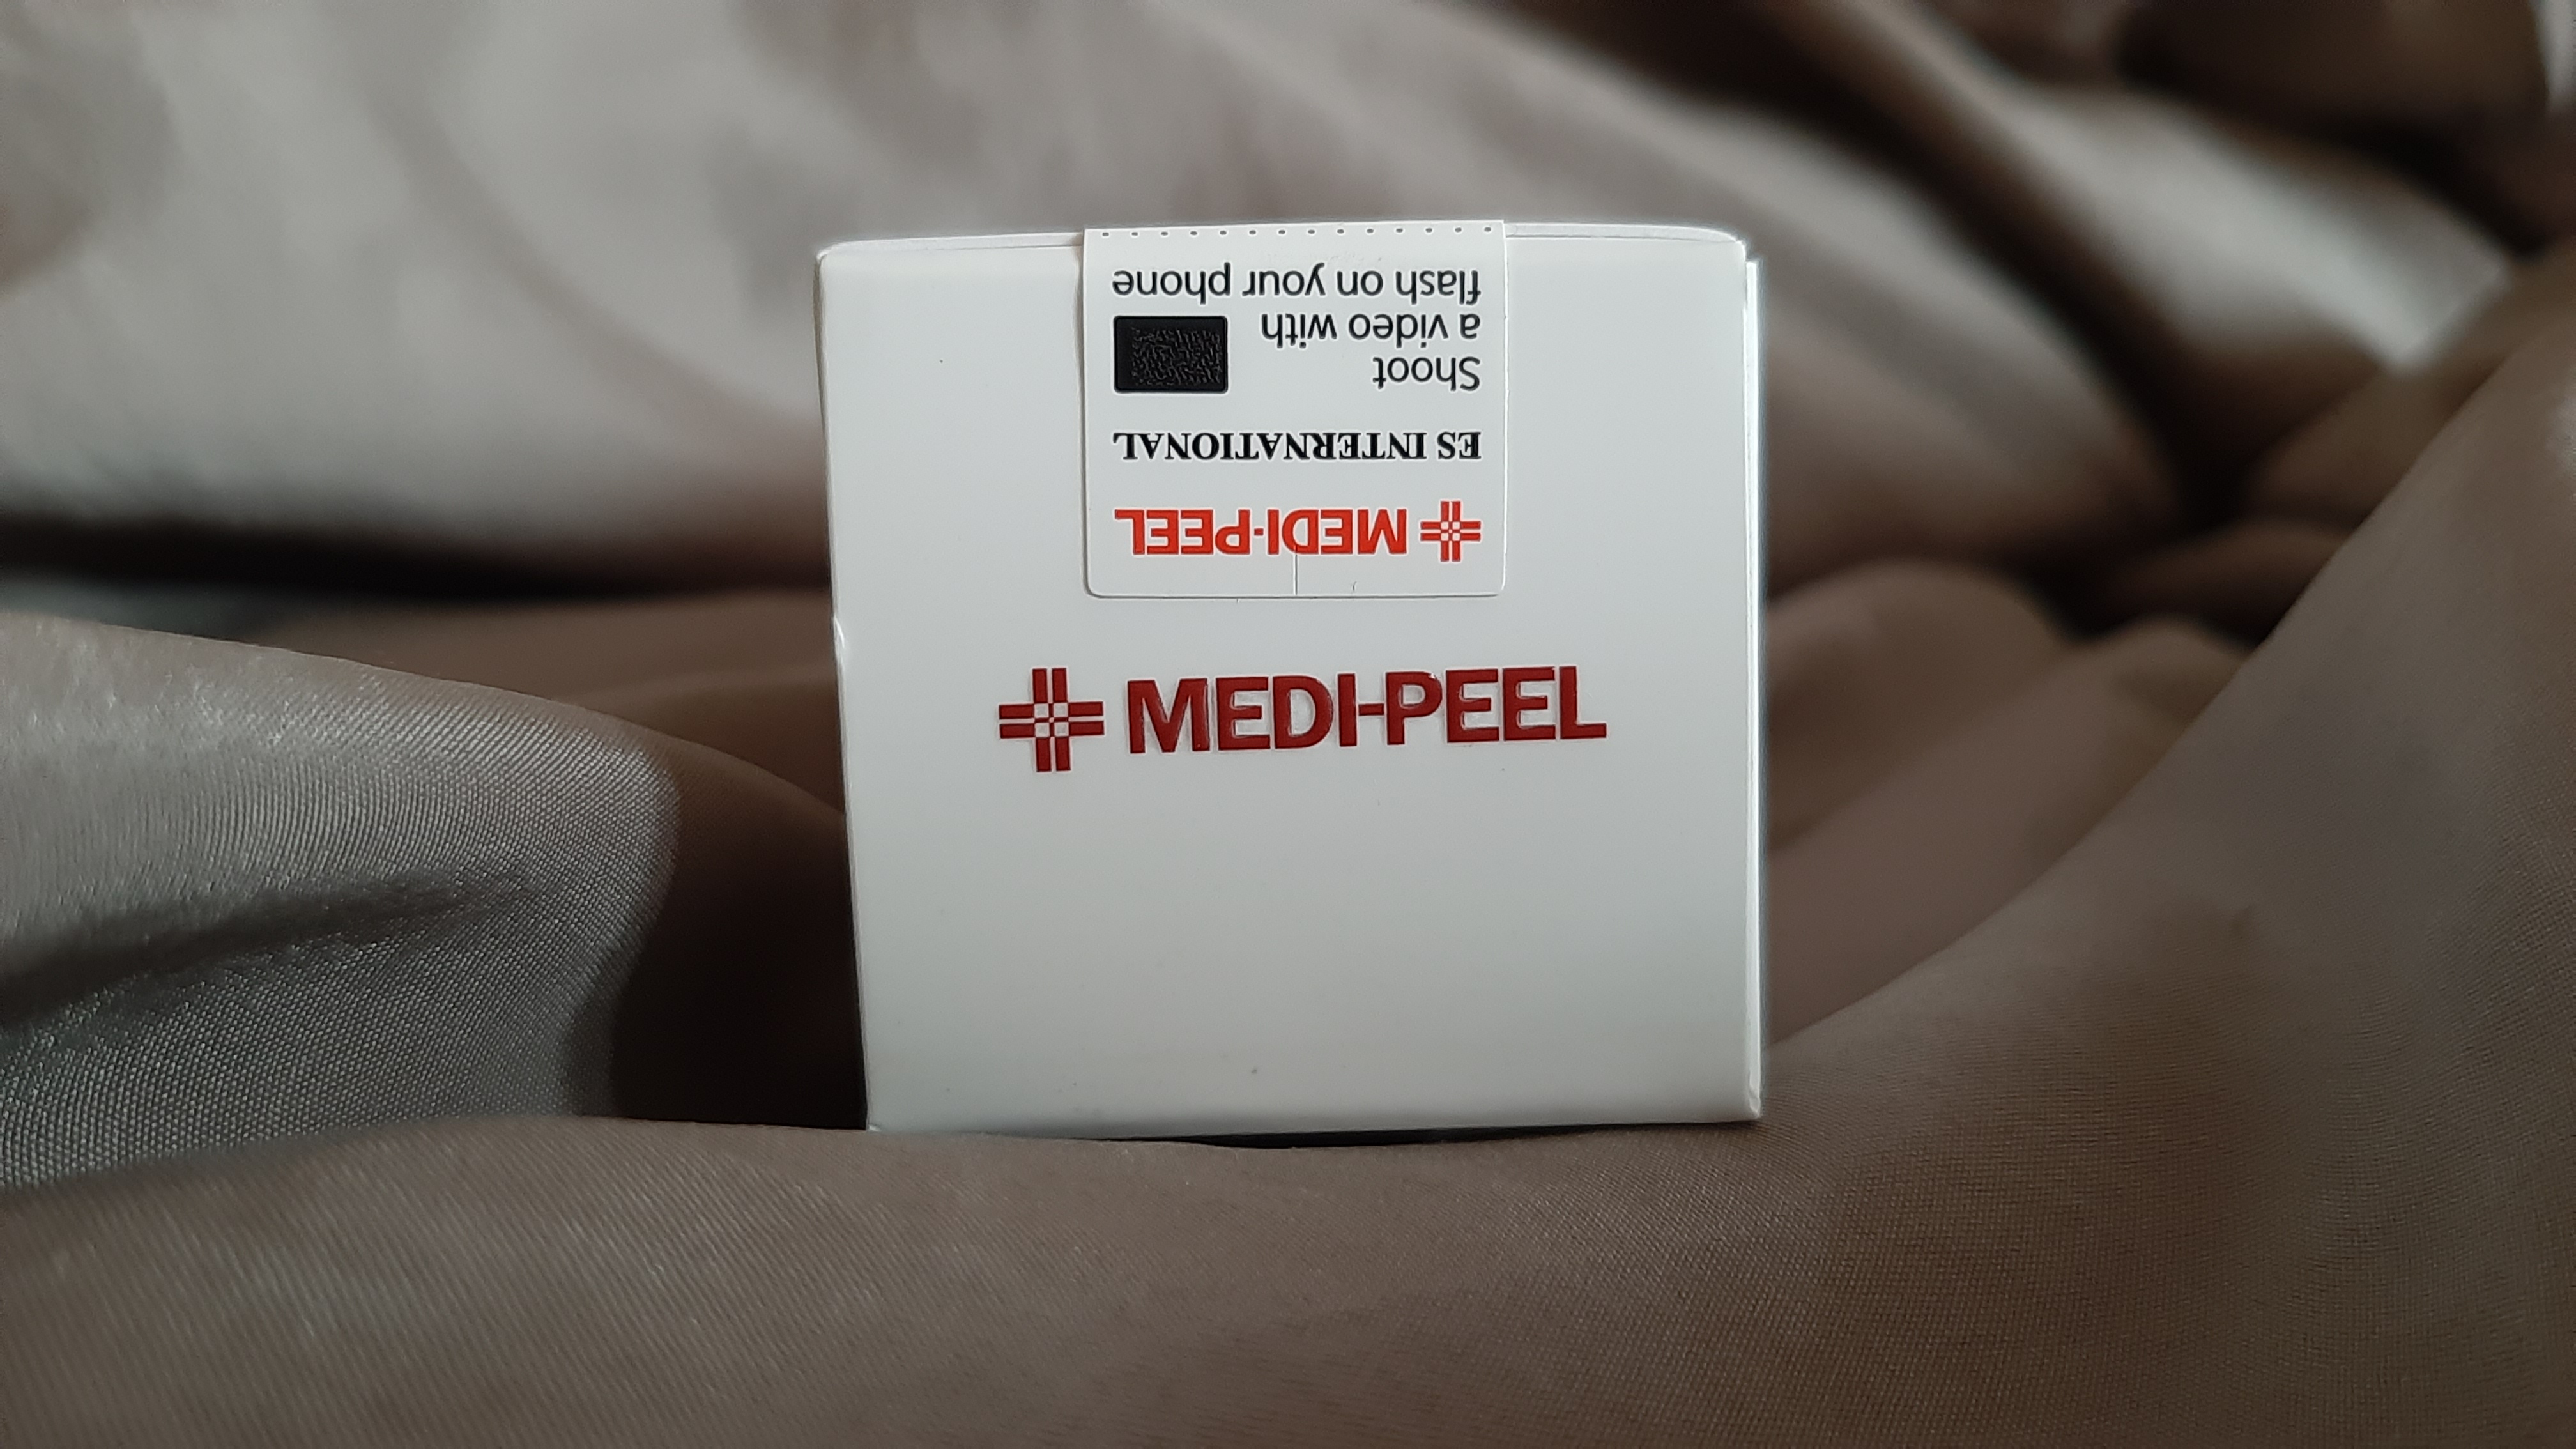 Що не так з пептидами Medi-peel?